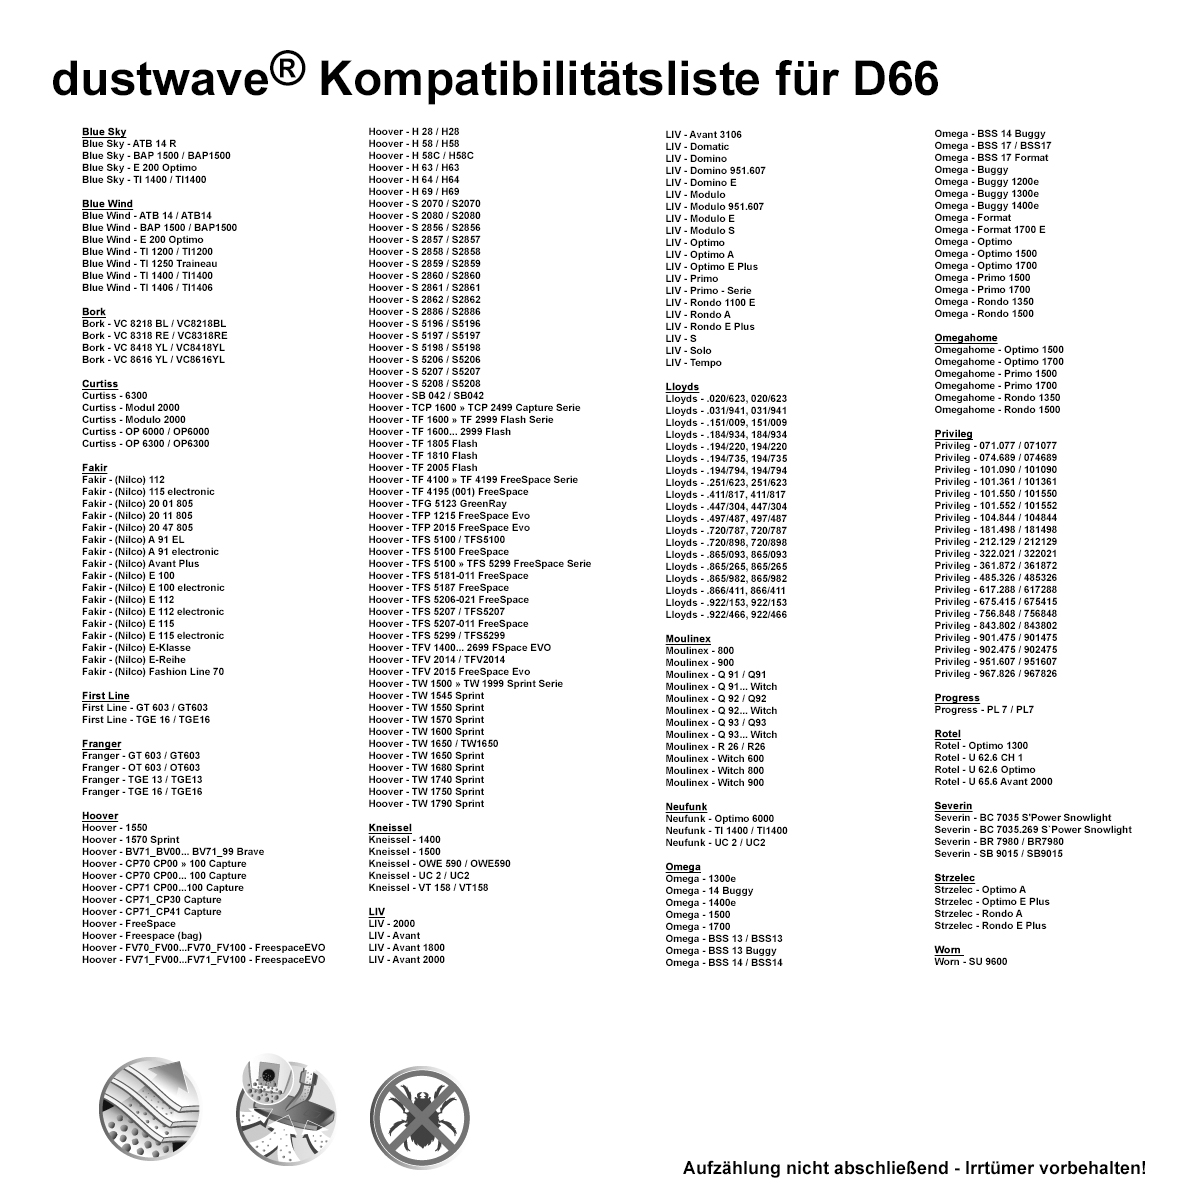 Dustwave® 20 Staubsaugerbeutel für Hoover TW1650 / TRTW1650 - hocheffizient, mehrlagiges Mikrovlies mit Hygieneverschluss - Made in Germany